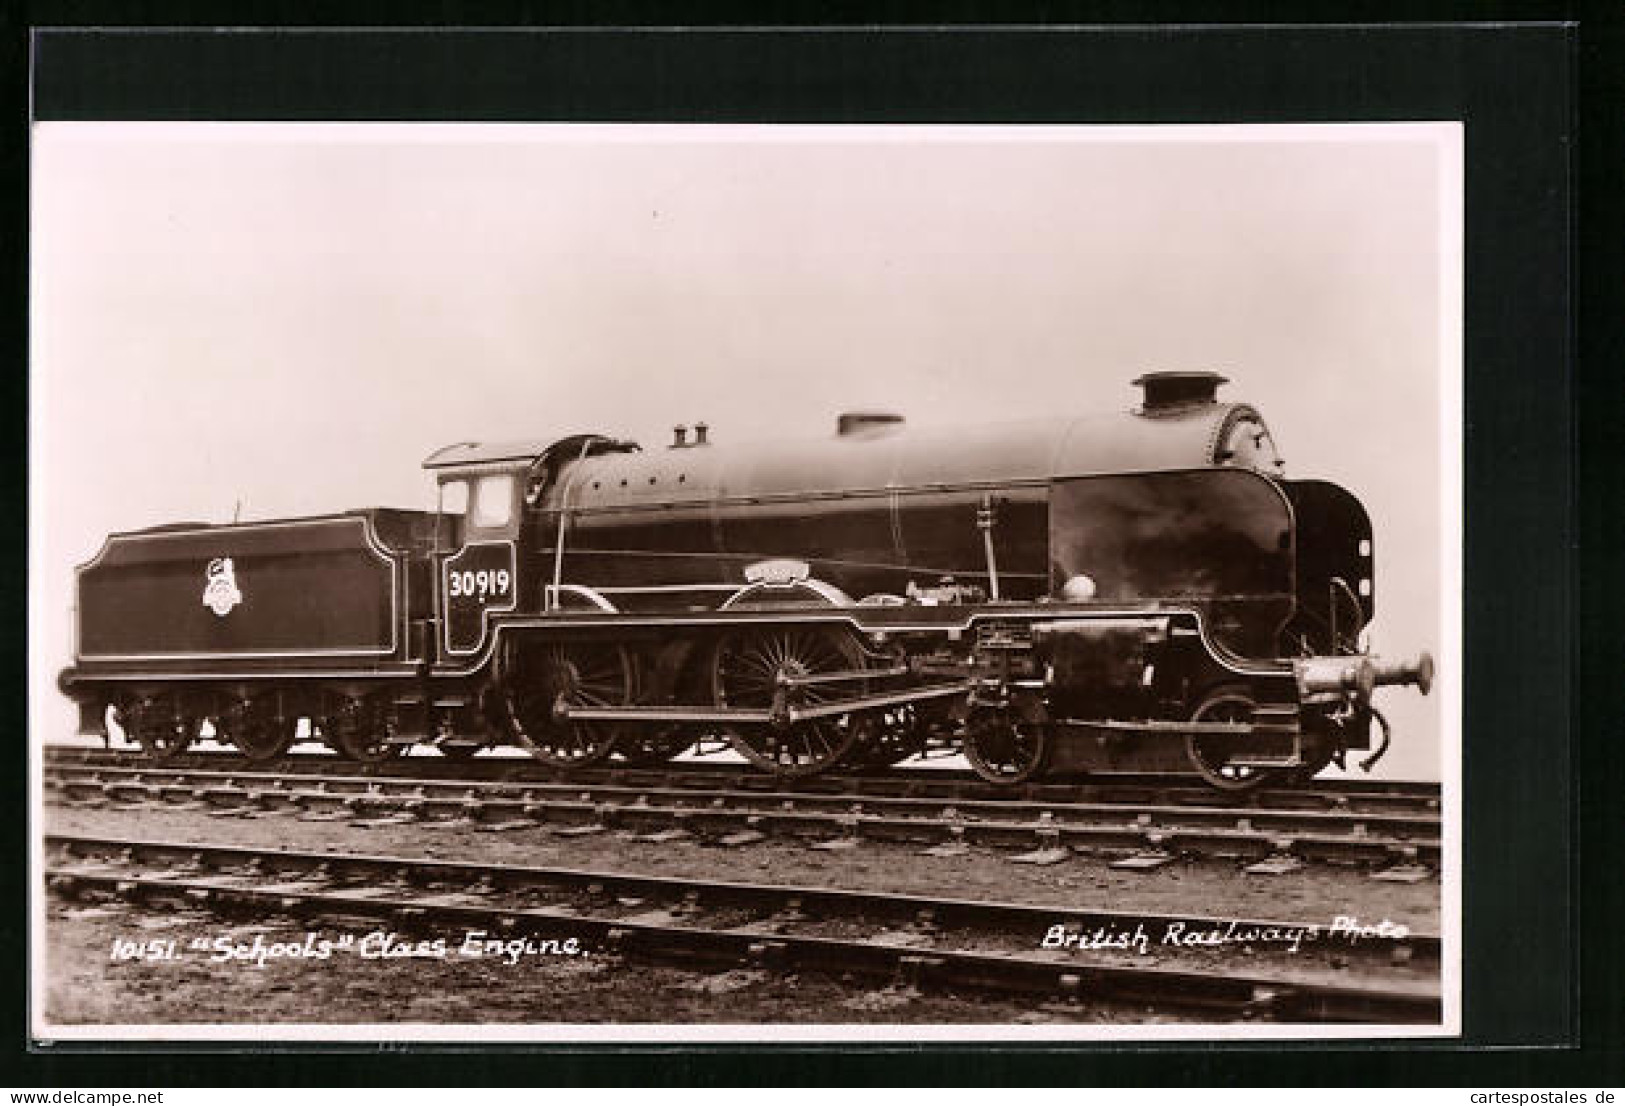 Pc Schools Class Engine, Englische Eisenbahn Nr. 30919  - Trains